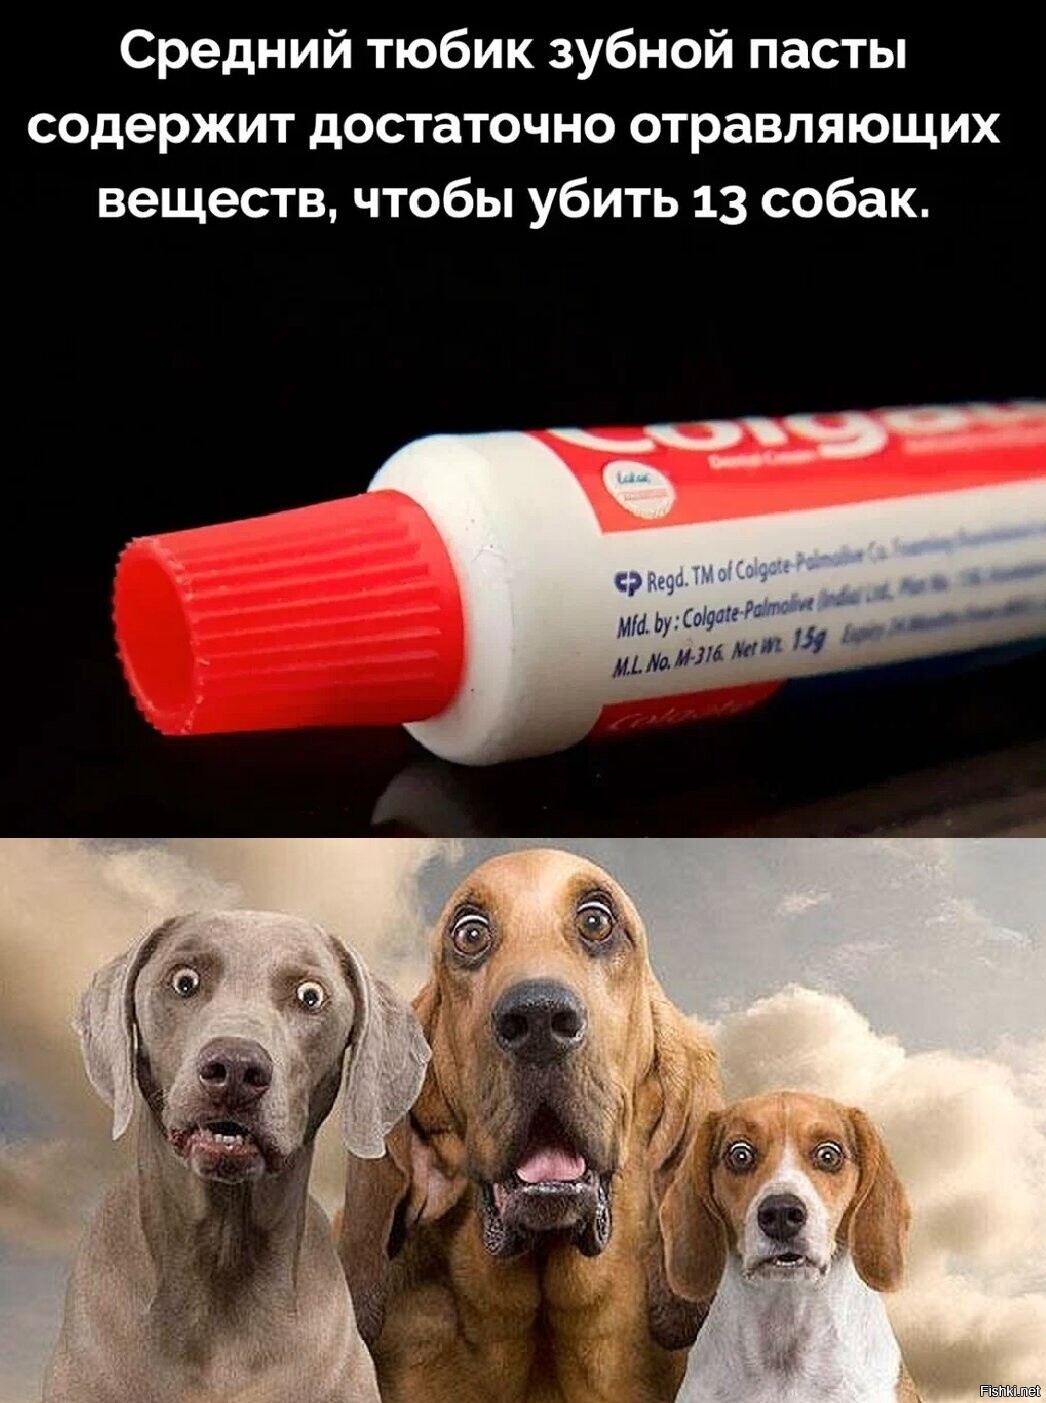 Теперь я знаю, чего собаки зубы не чистят